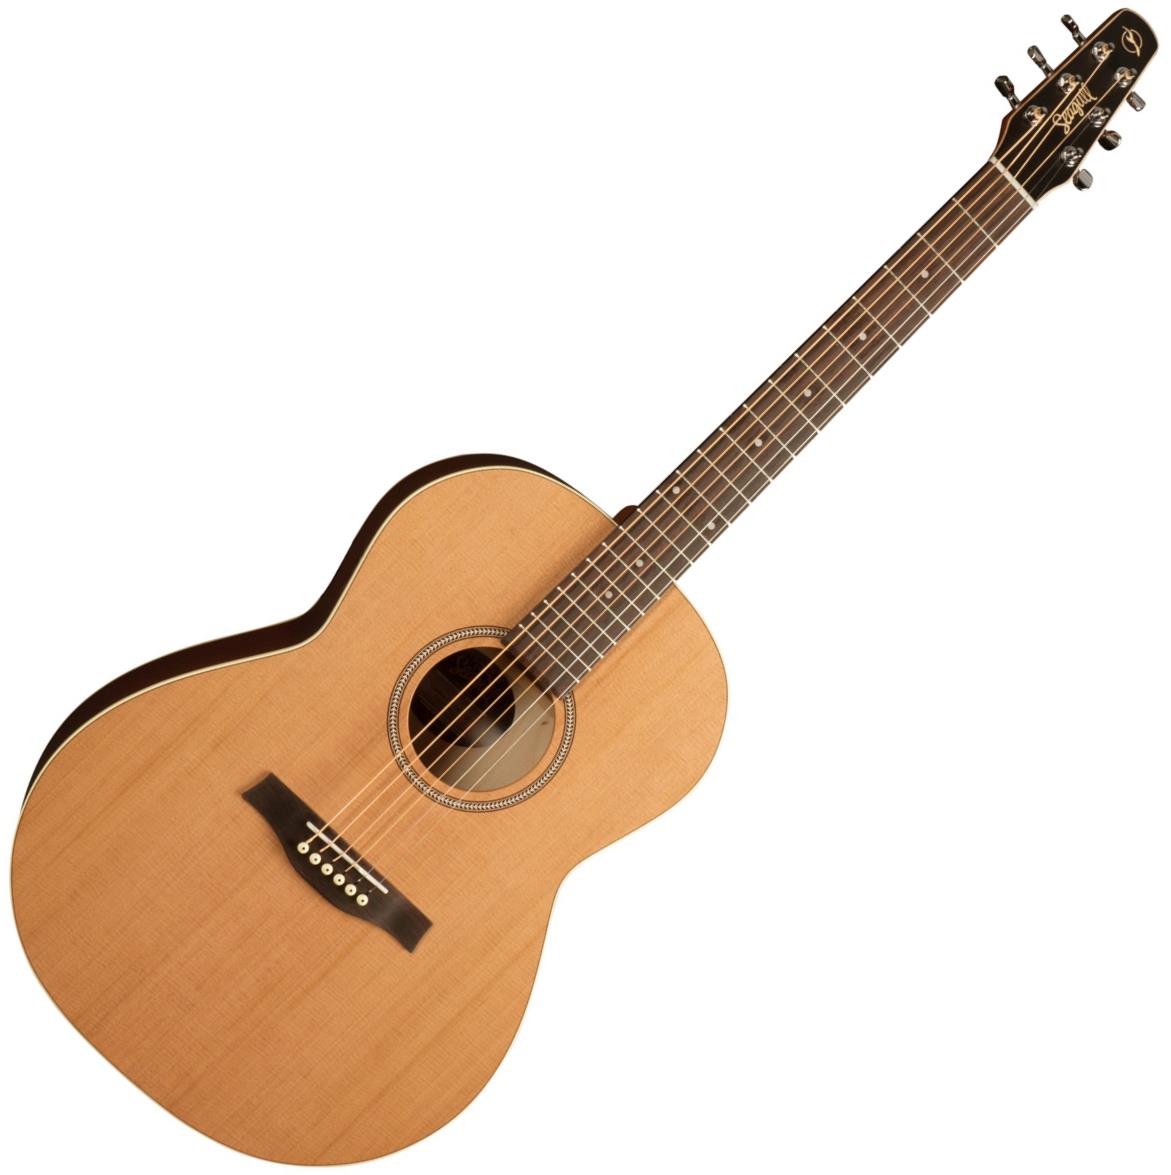 Seagull Coastline S6 Cedar Folk Acoustic Guitar